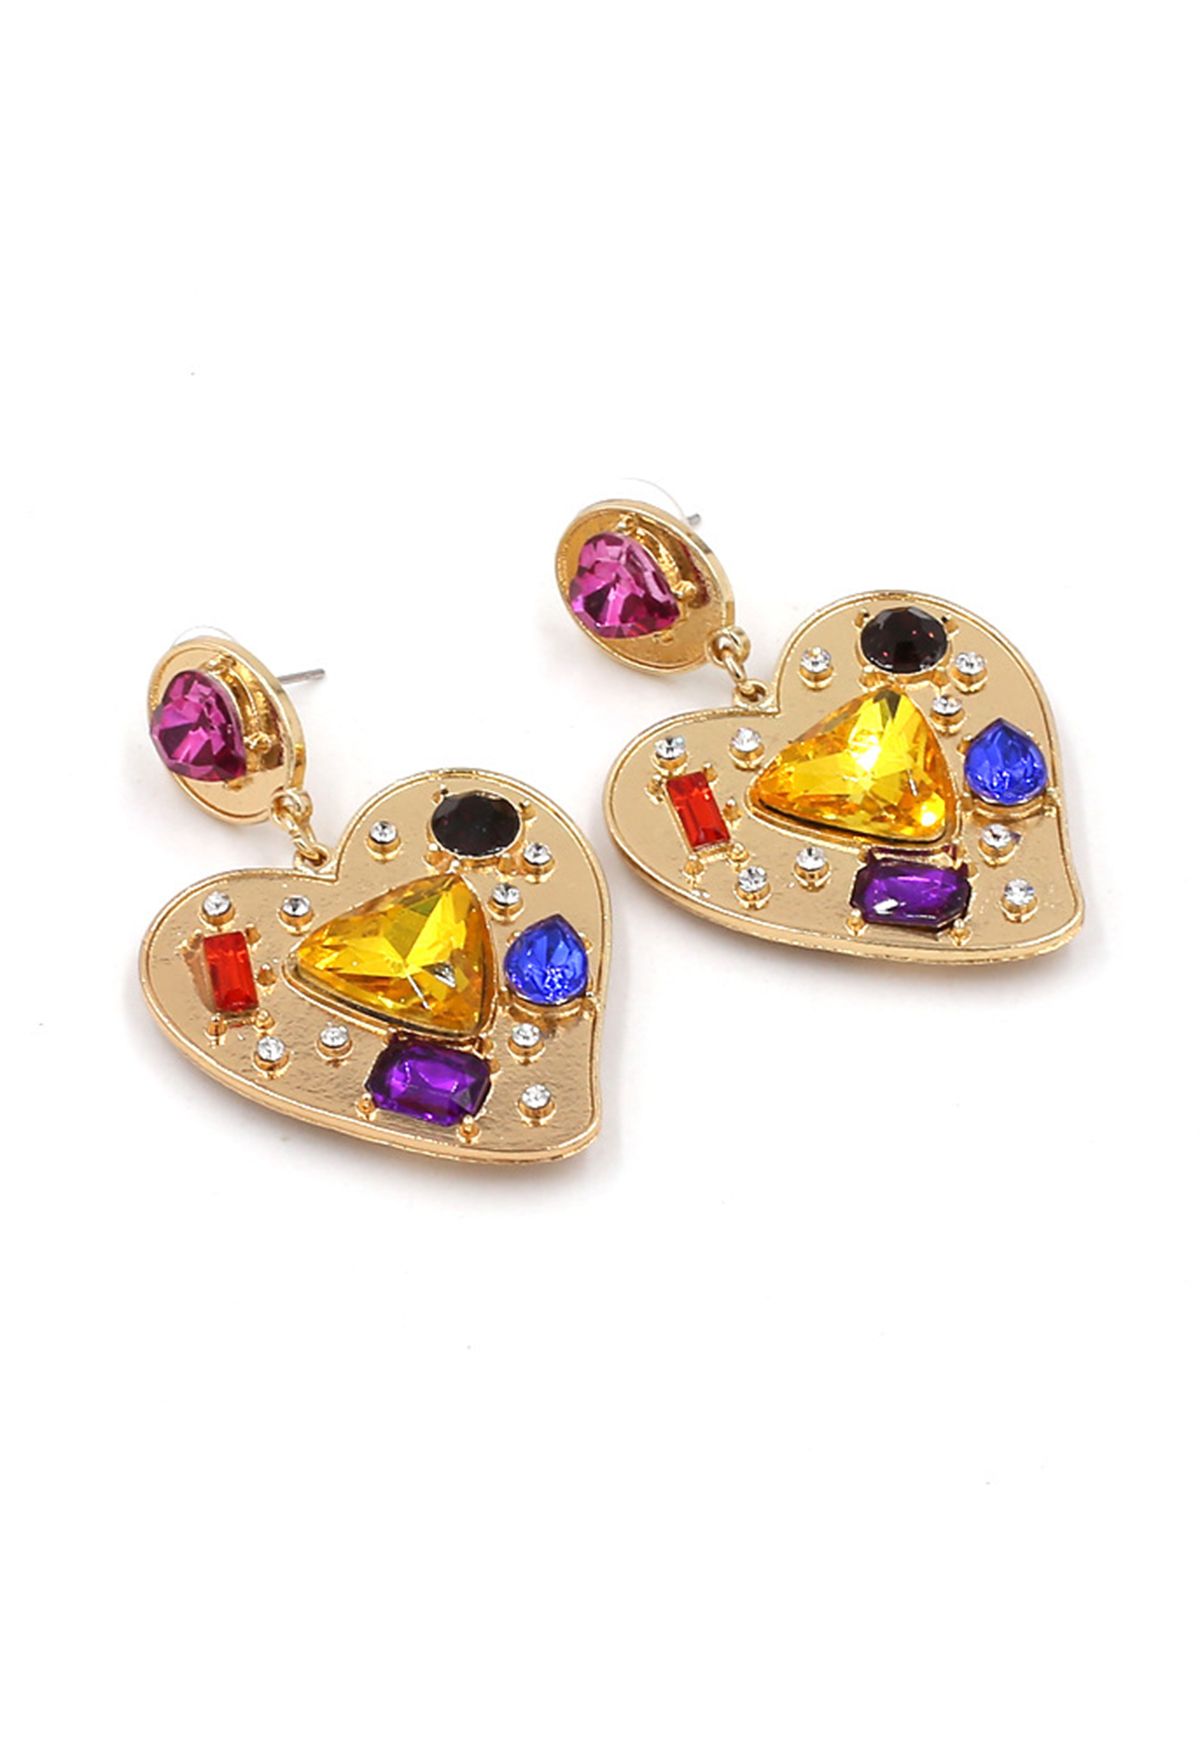 Heart Shape Multi Color Crystal Earrings in Gold